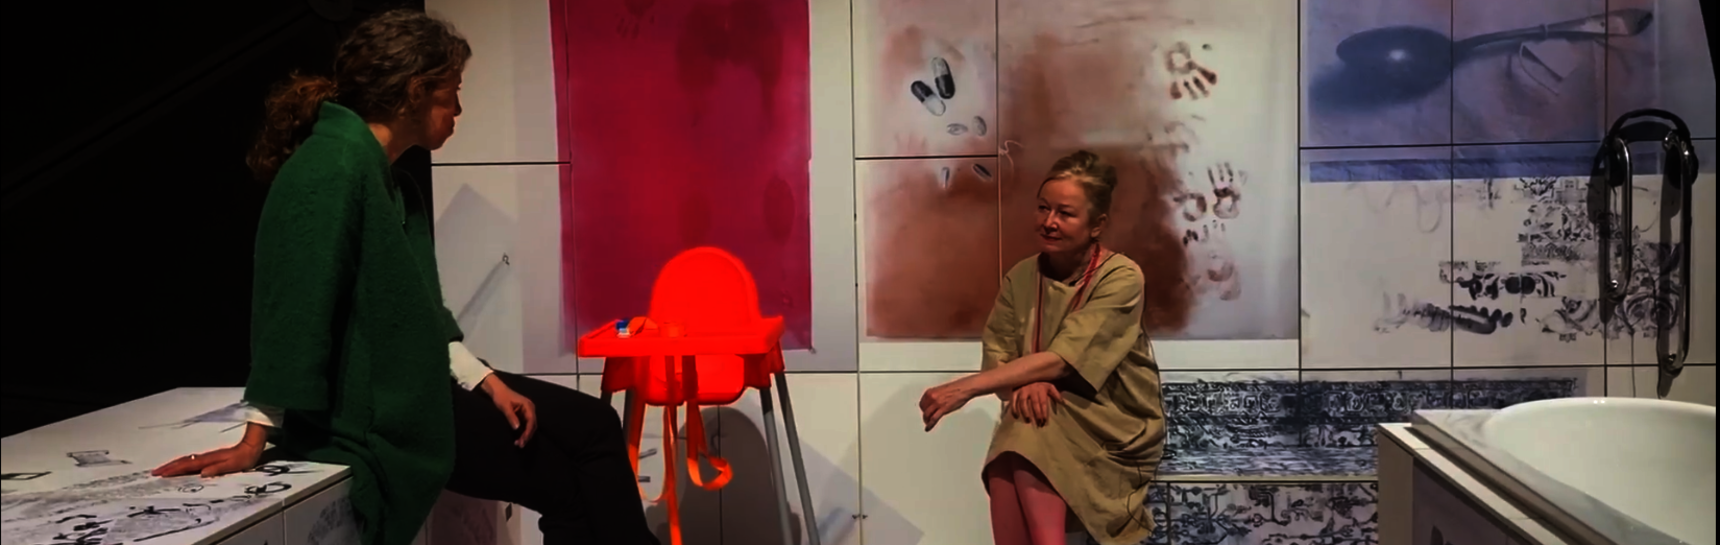 Die Kuratorin Katrin Bucher Trantow sitzt mit der Künstlerin Iris Andraschek auf deren Installation und stellt ihr Fragen